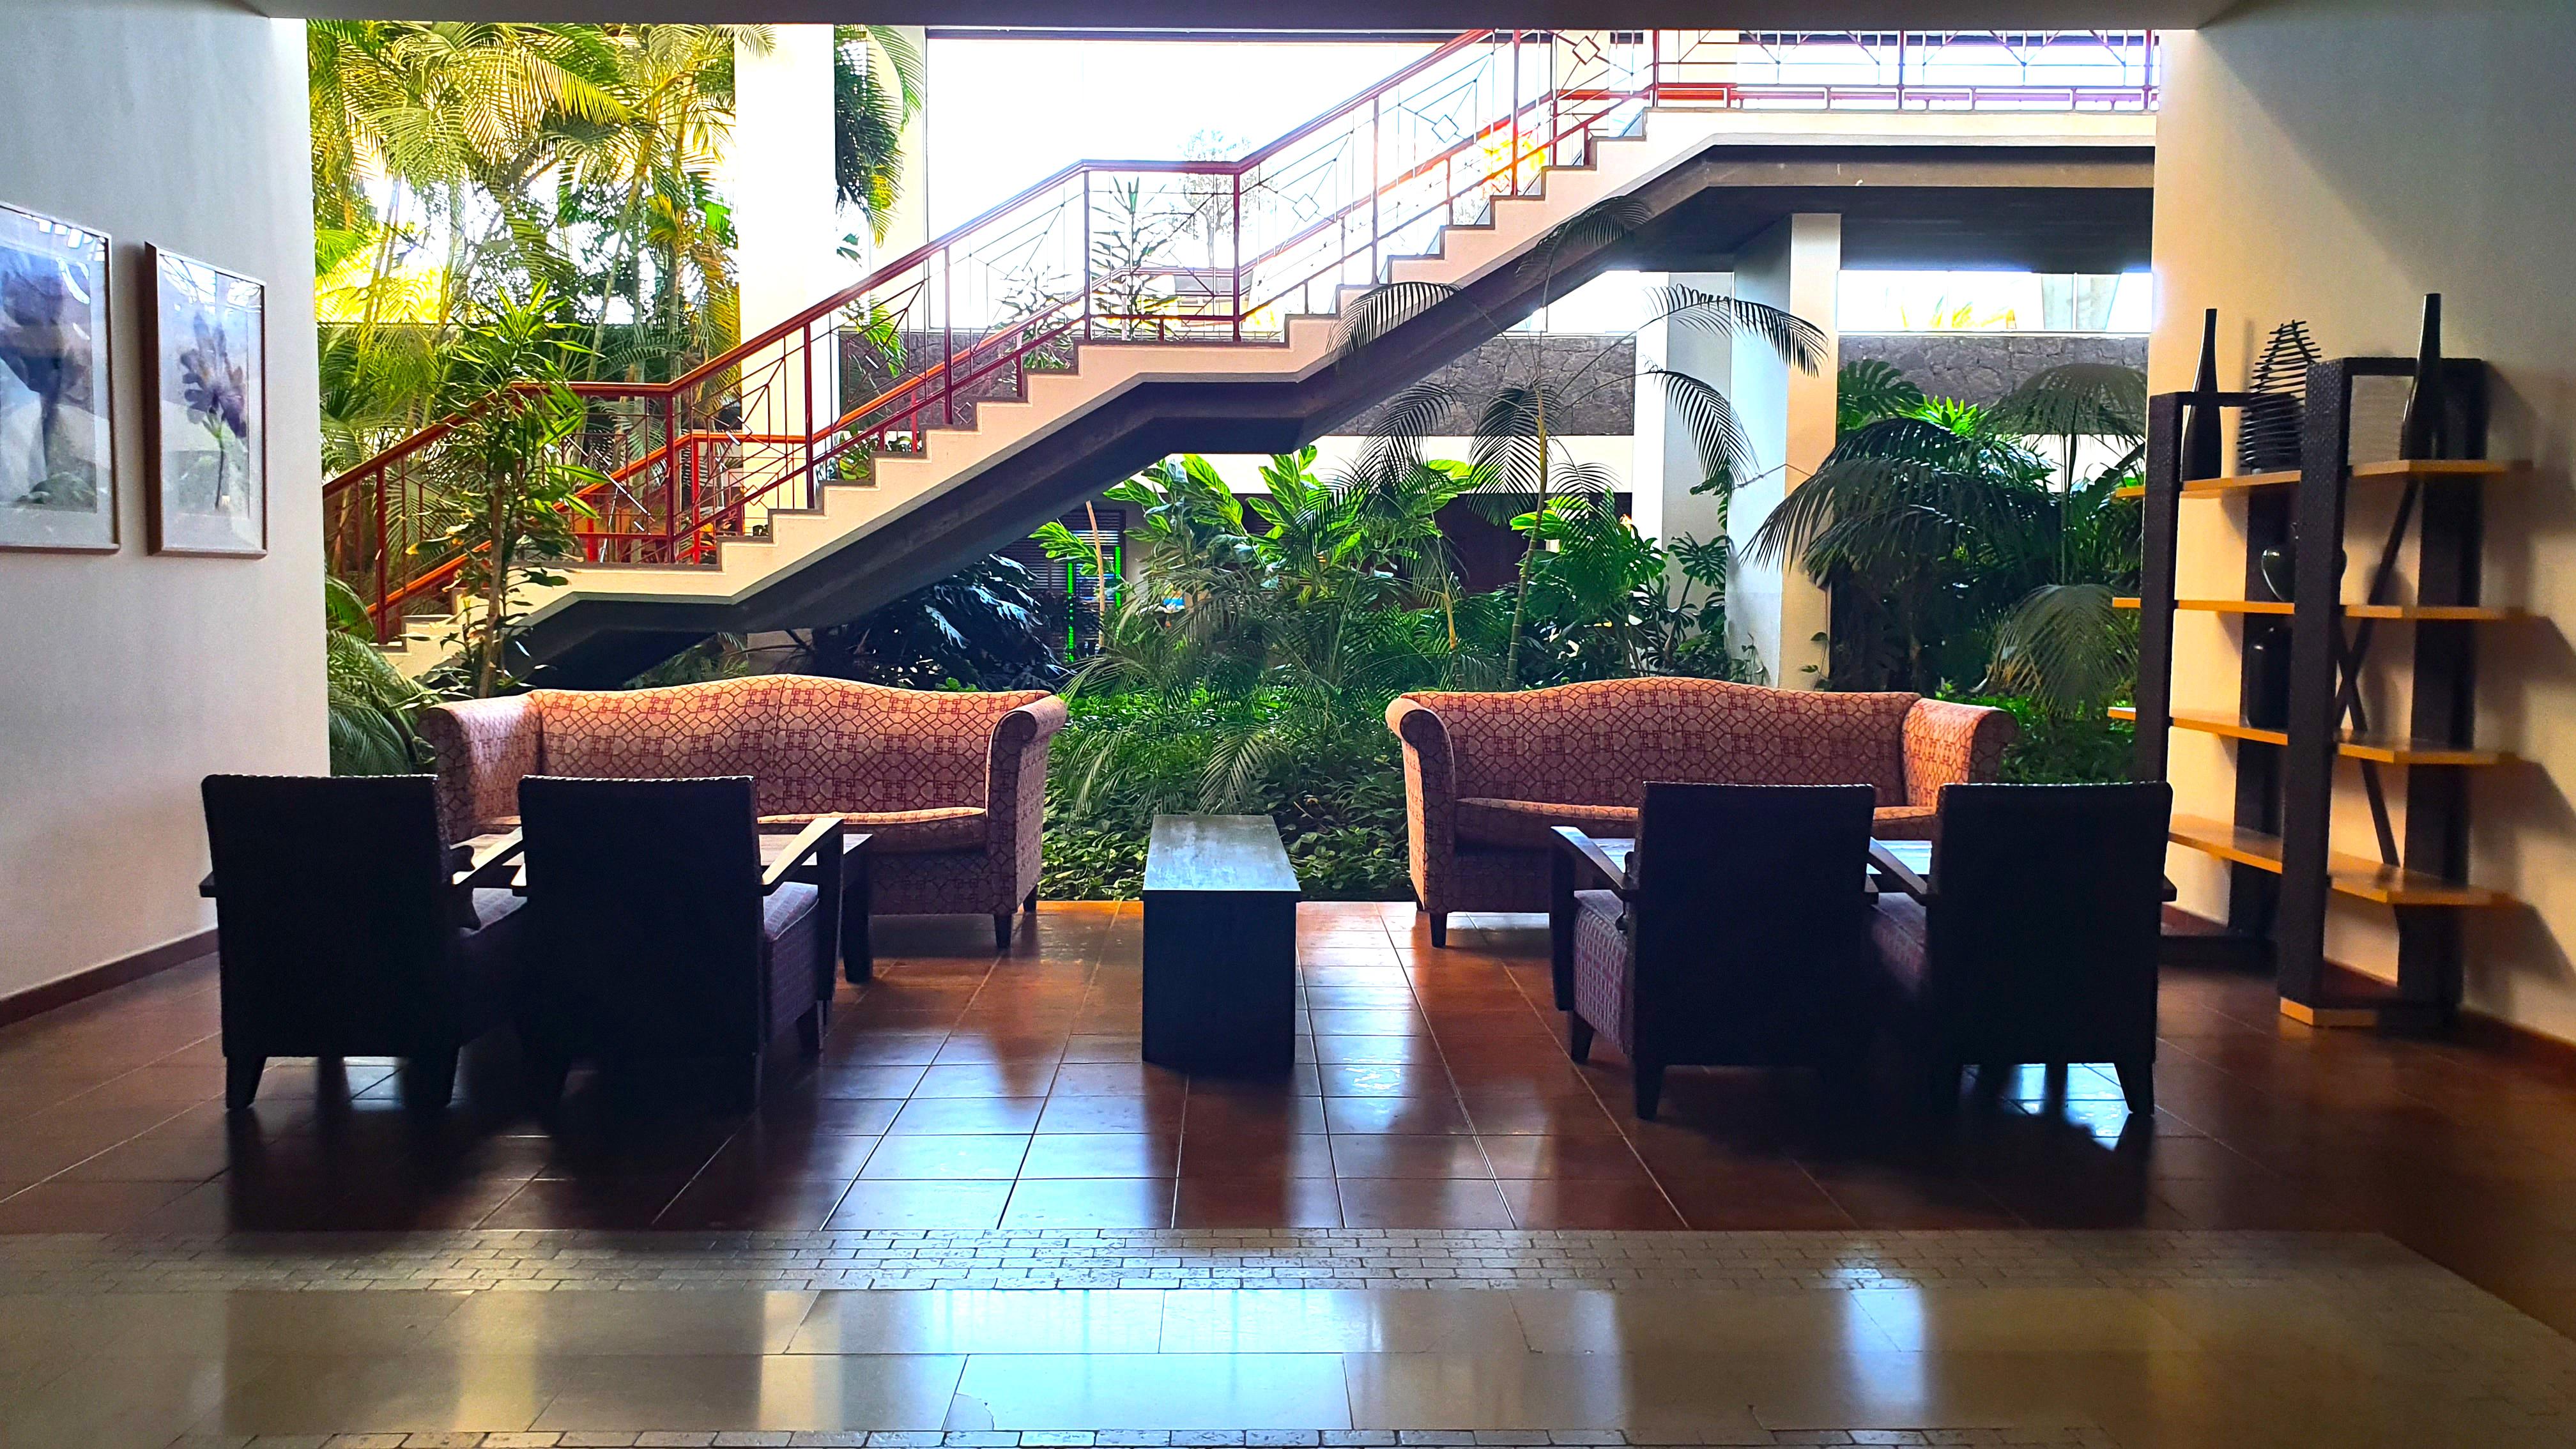 Hotel Costa Calero Thalasso & Spa 푸에르토카레로 외부 사진